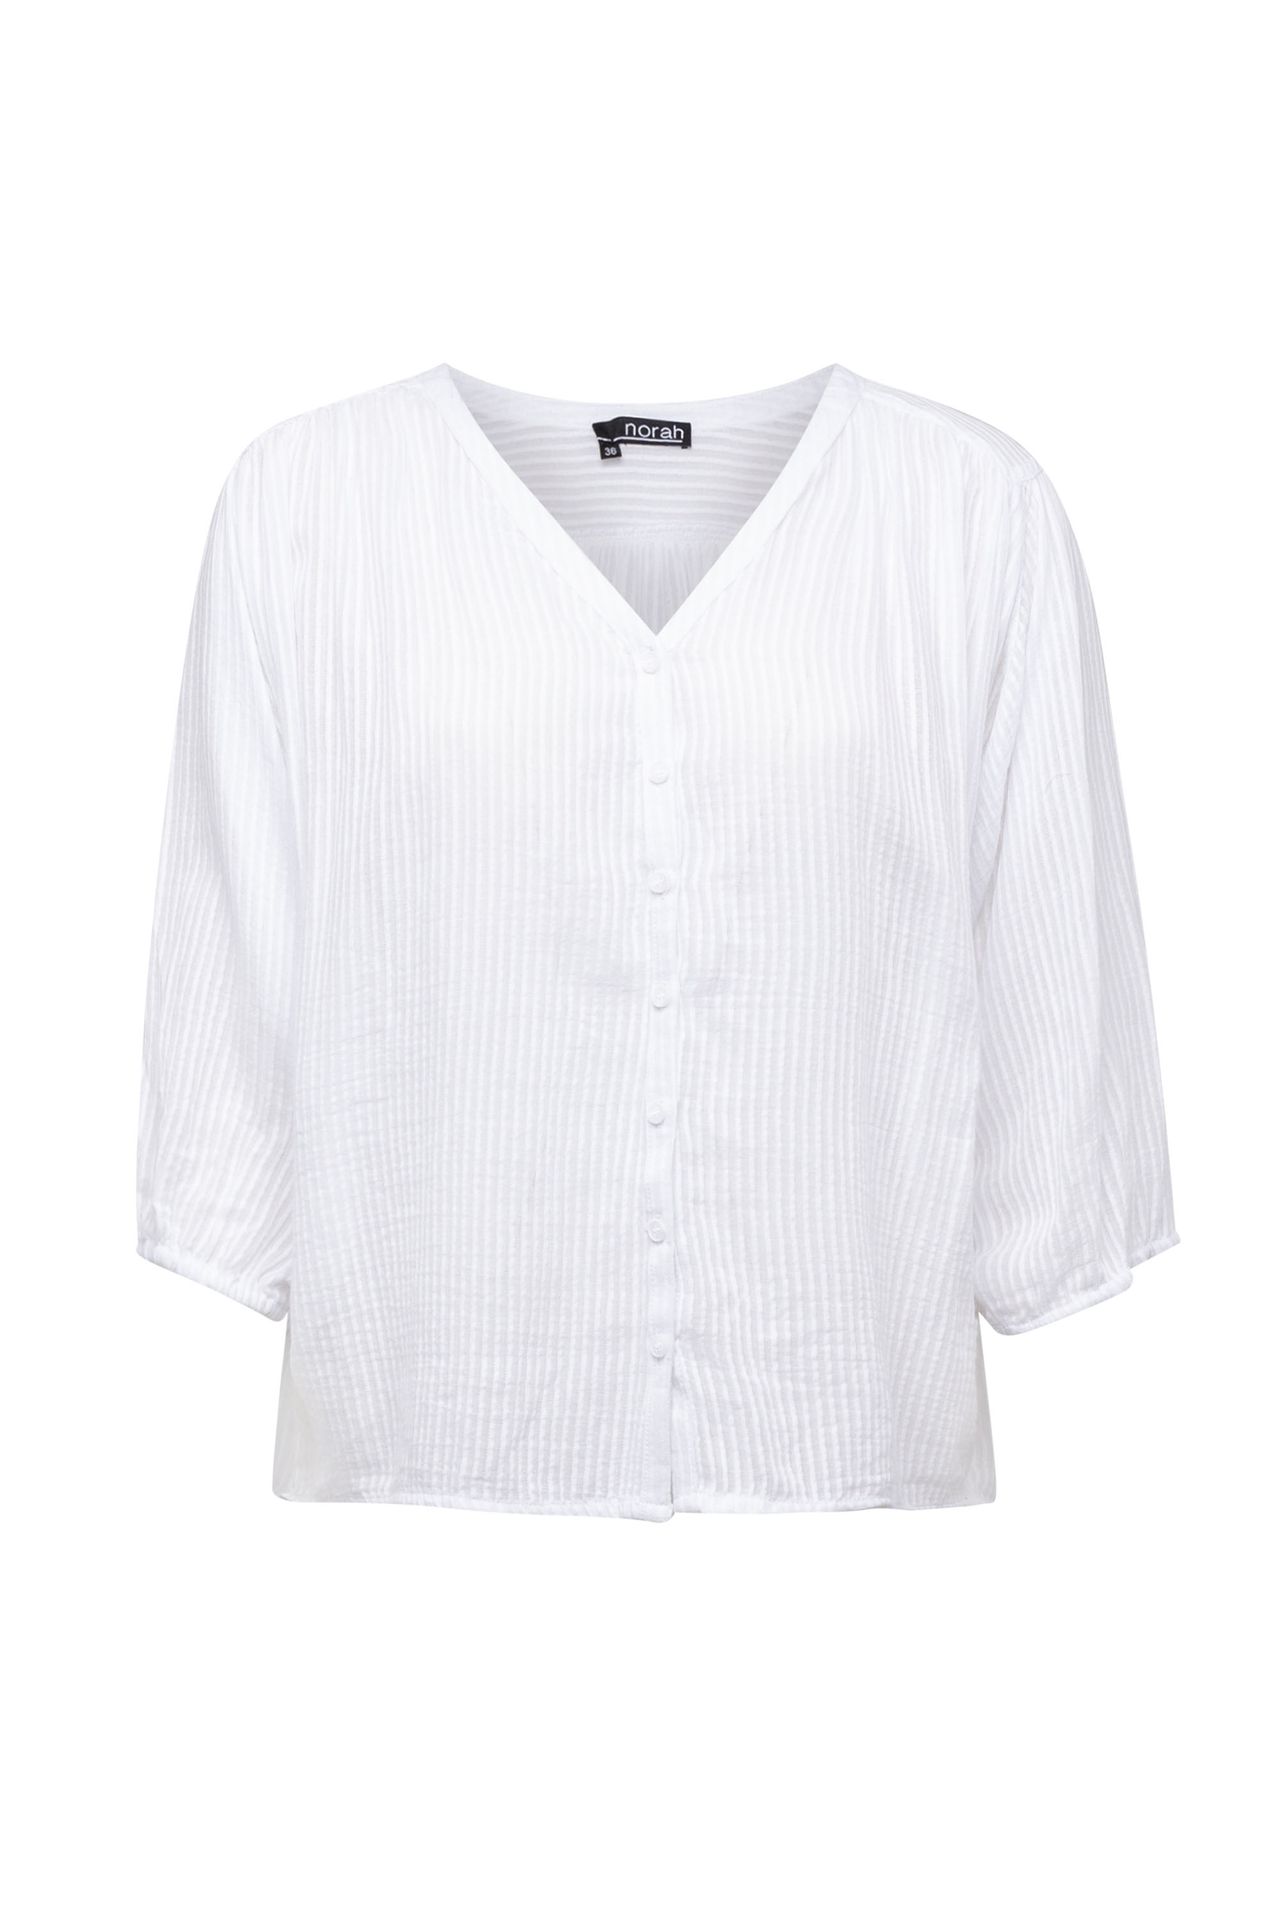  Witte blouse met streeppatroon Wit P-213741-100